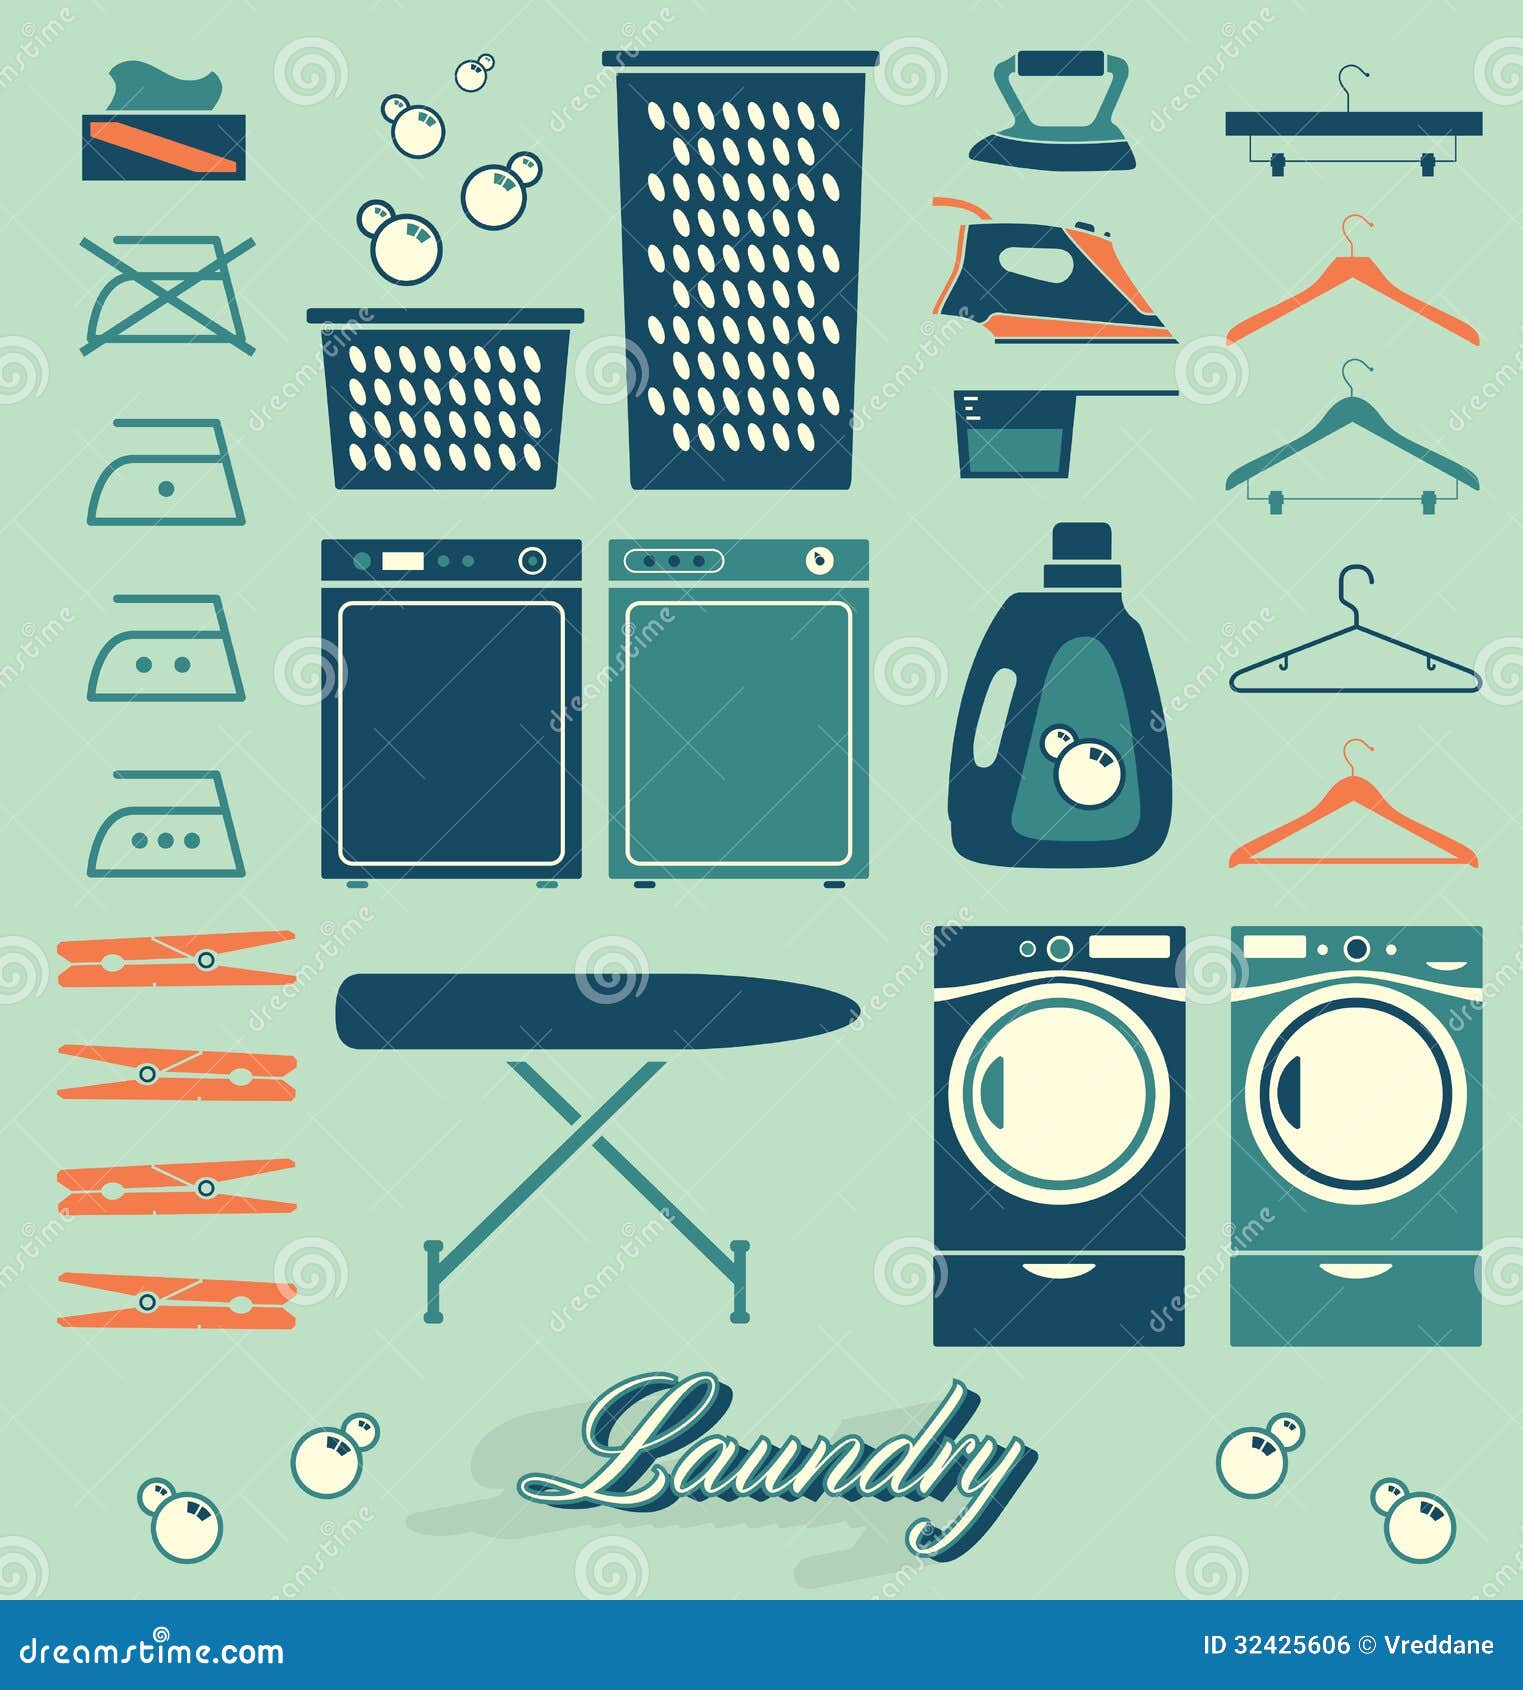 laundry room clip art free - photo #11